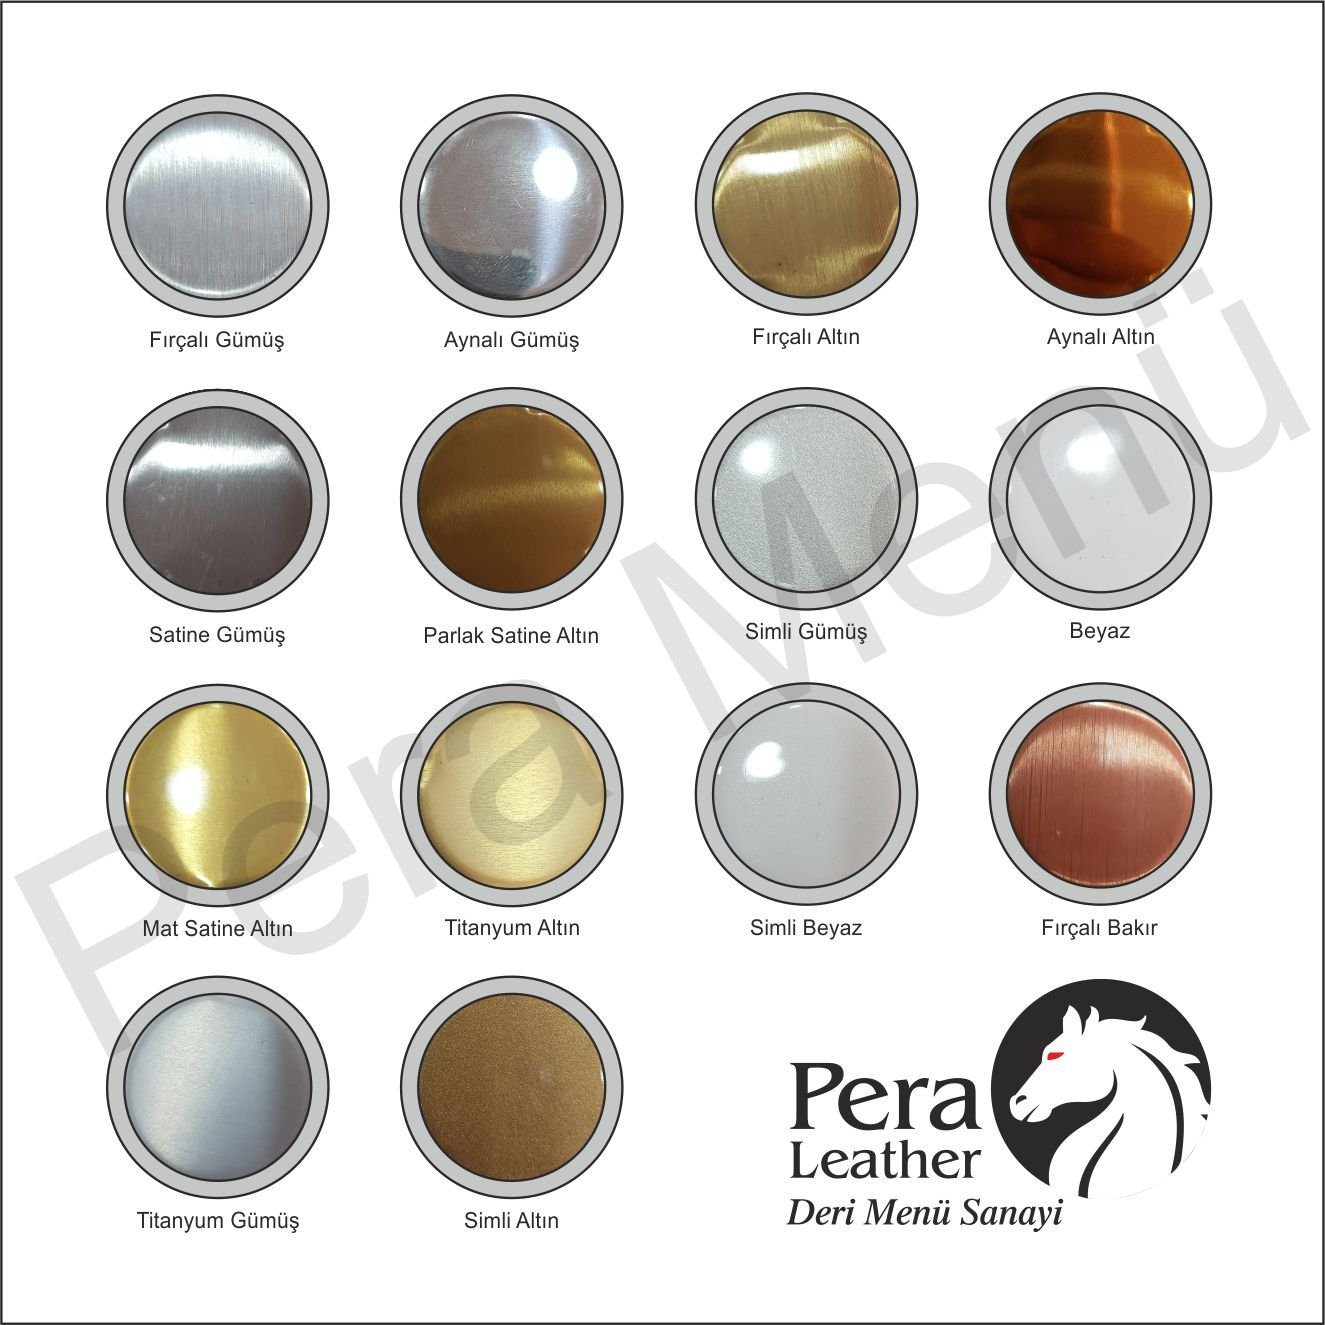 Süblimasyon metal levhalar üzerine renkli logo baskıları yapılmaktadır. Pera deri menü sanayide üretilmiştir.